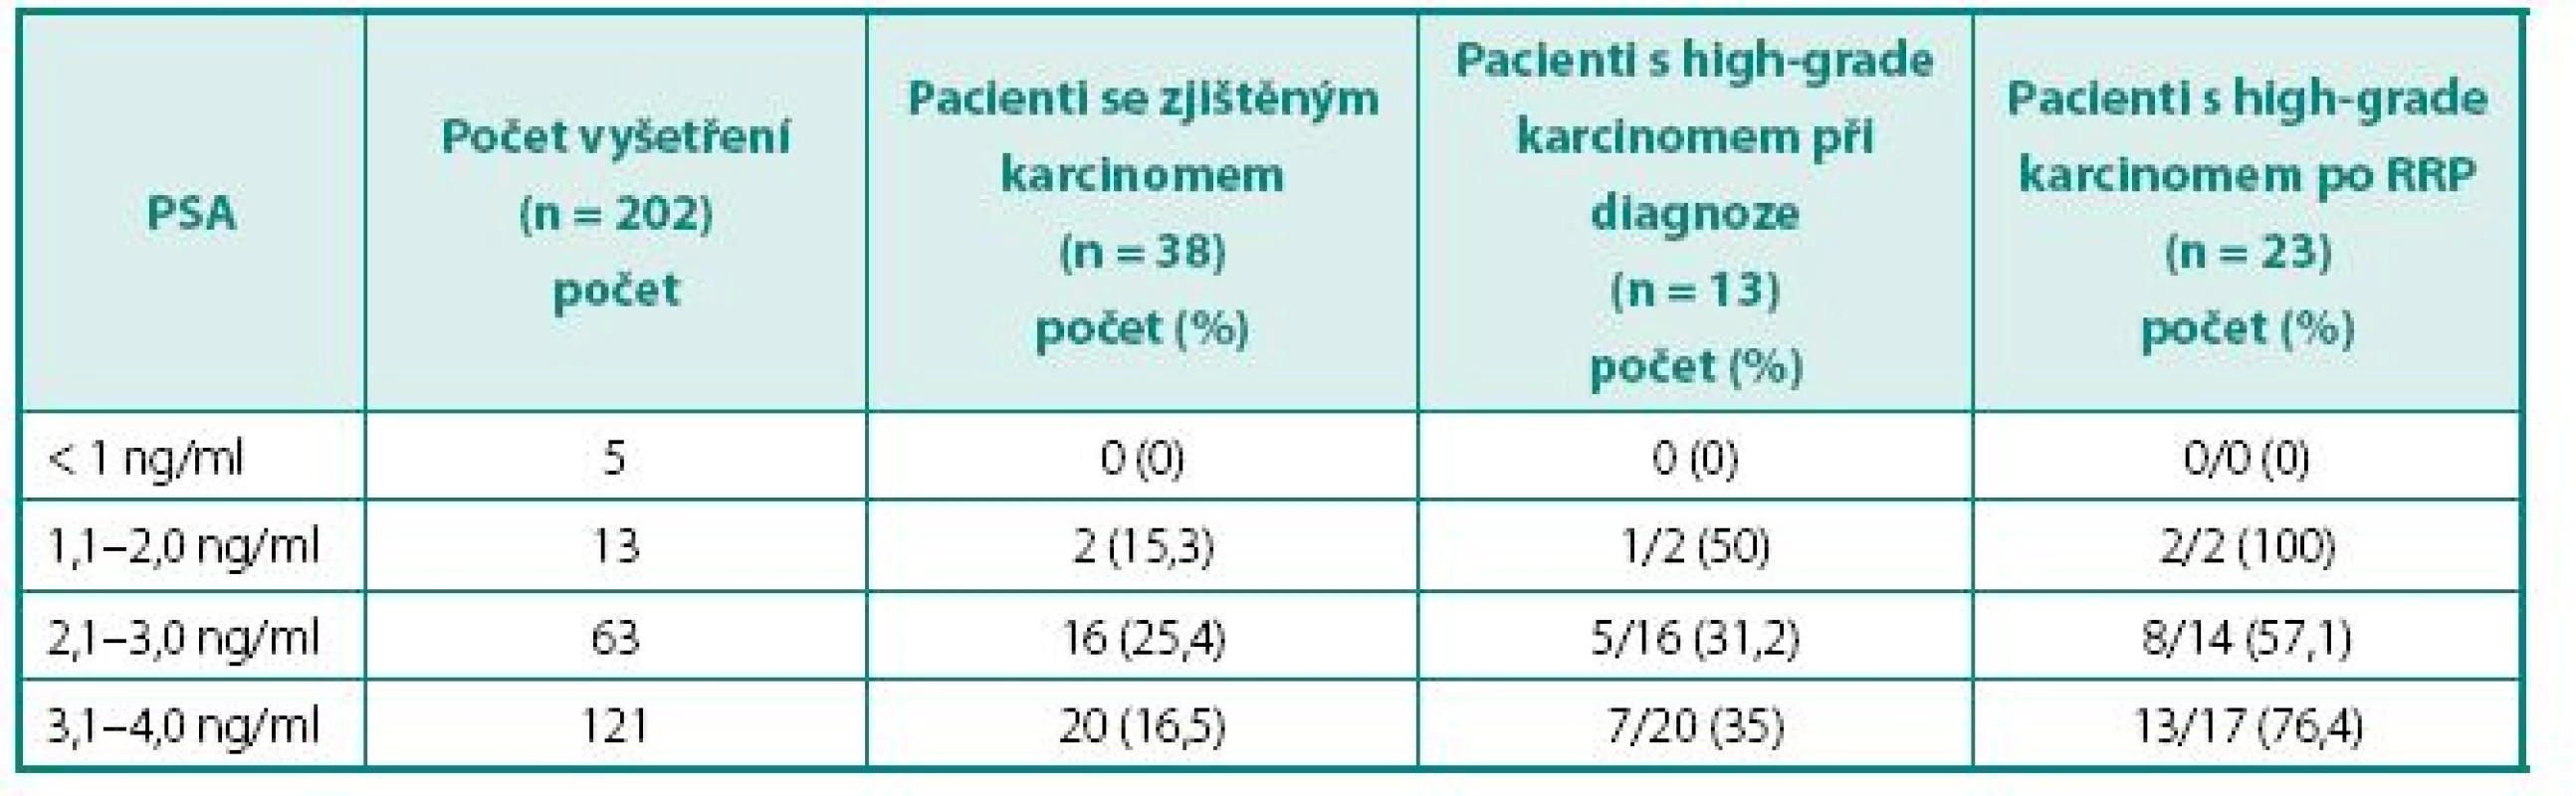 Záchyt karcinomu prostaty u pacientů s celkovým PSA &lt; 4 ng/ml
Table 2. Capture of prostate cancer in man with PSA &lt; 4 ng/m